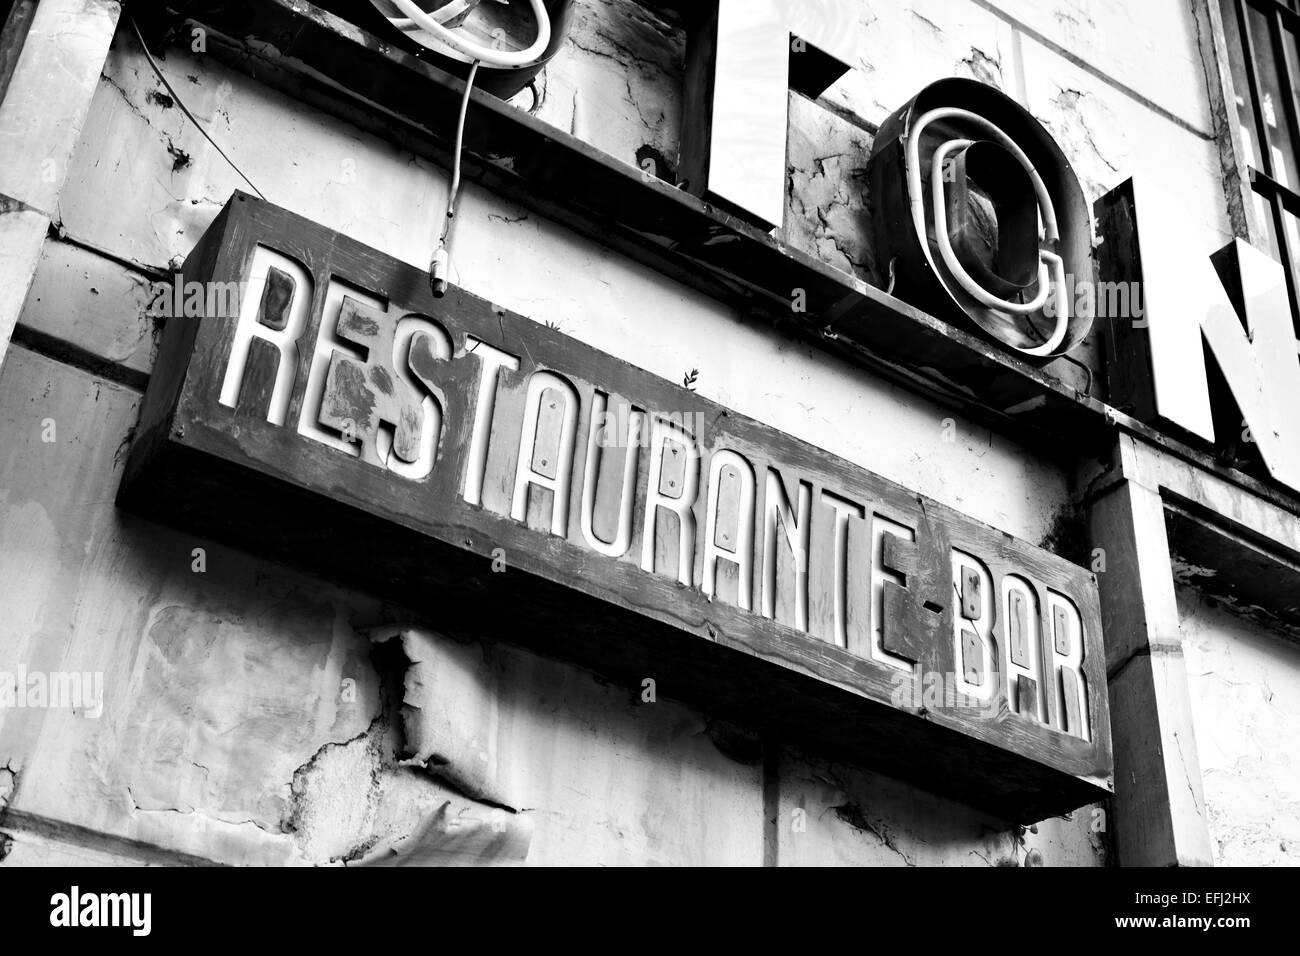 Zeichen der verlassenen Restaurant. Schwarz / weiß Bild Stockfoto